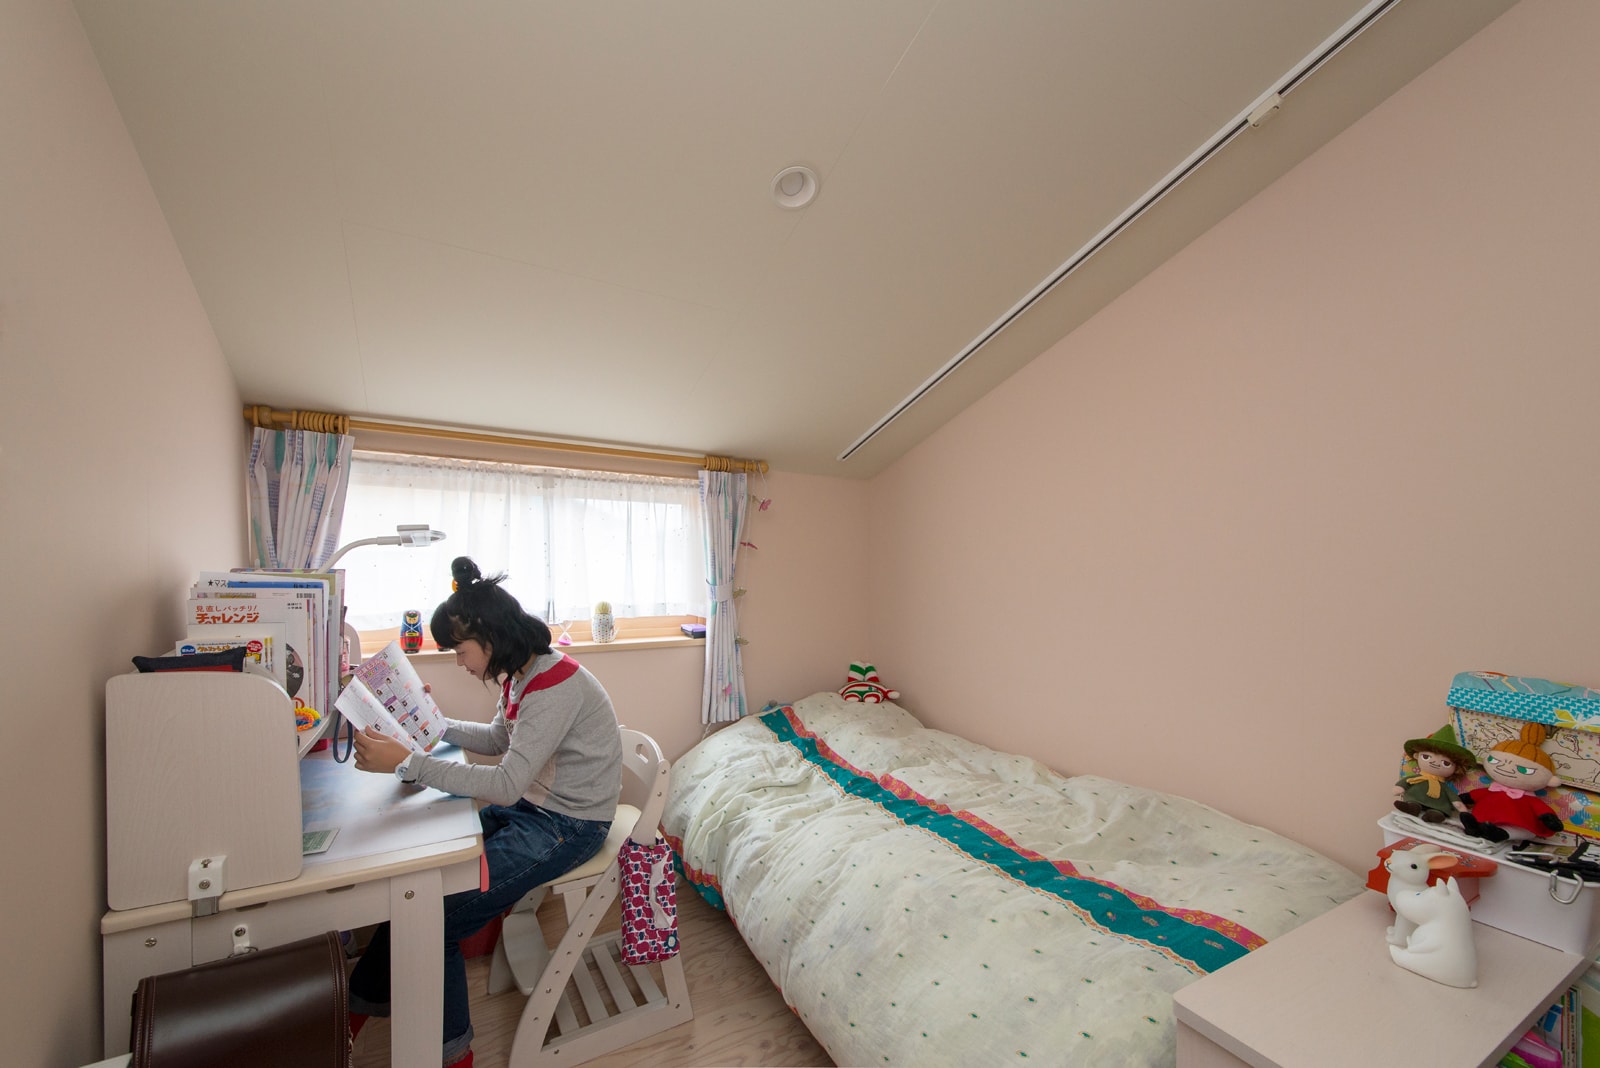 可変性がポイント 将来を考えた 今どきの 子ども部屋 子ども部屋 家づくりのアイデア Replan リプラン Webmagazine